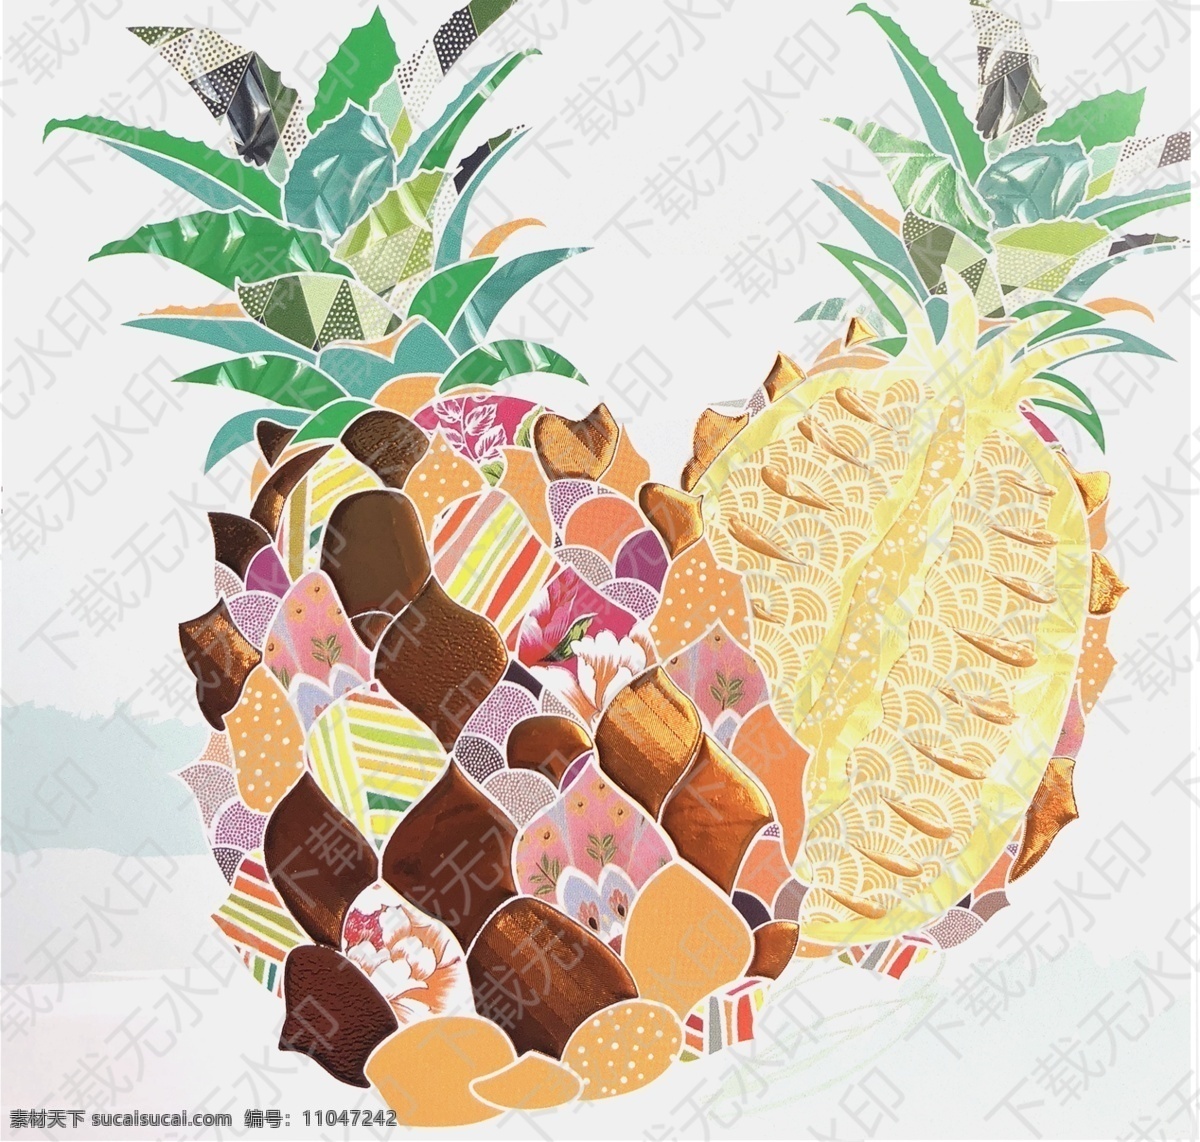 菠萝插画 水果插画 平面设计 字体设计 英文 插画 蔬菜插画 蔬菜 水果摄影 包装设计 彩色水果 水彩画